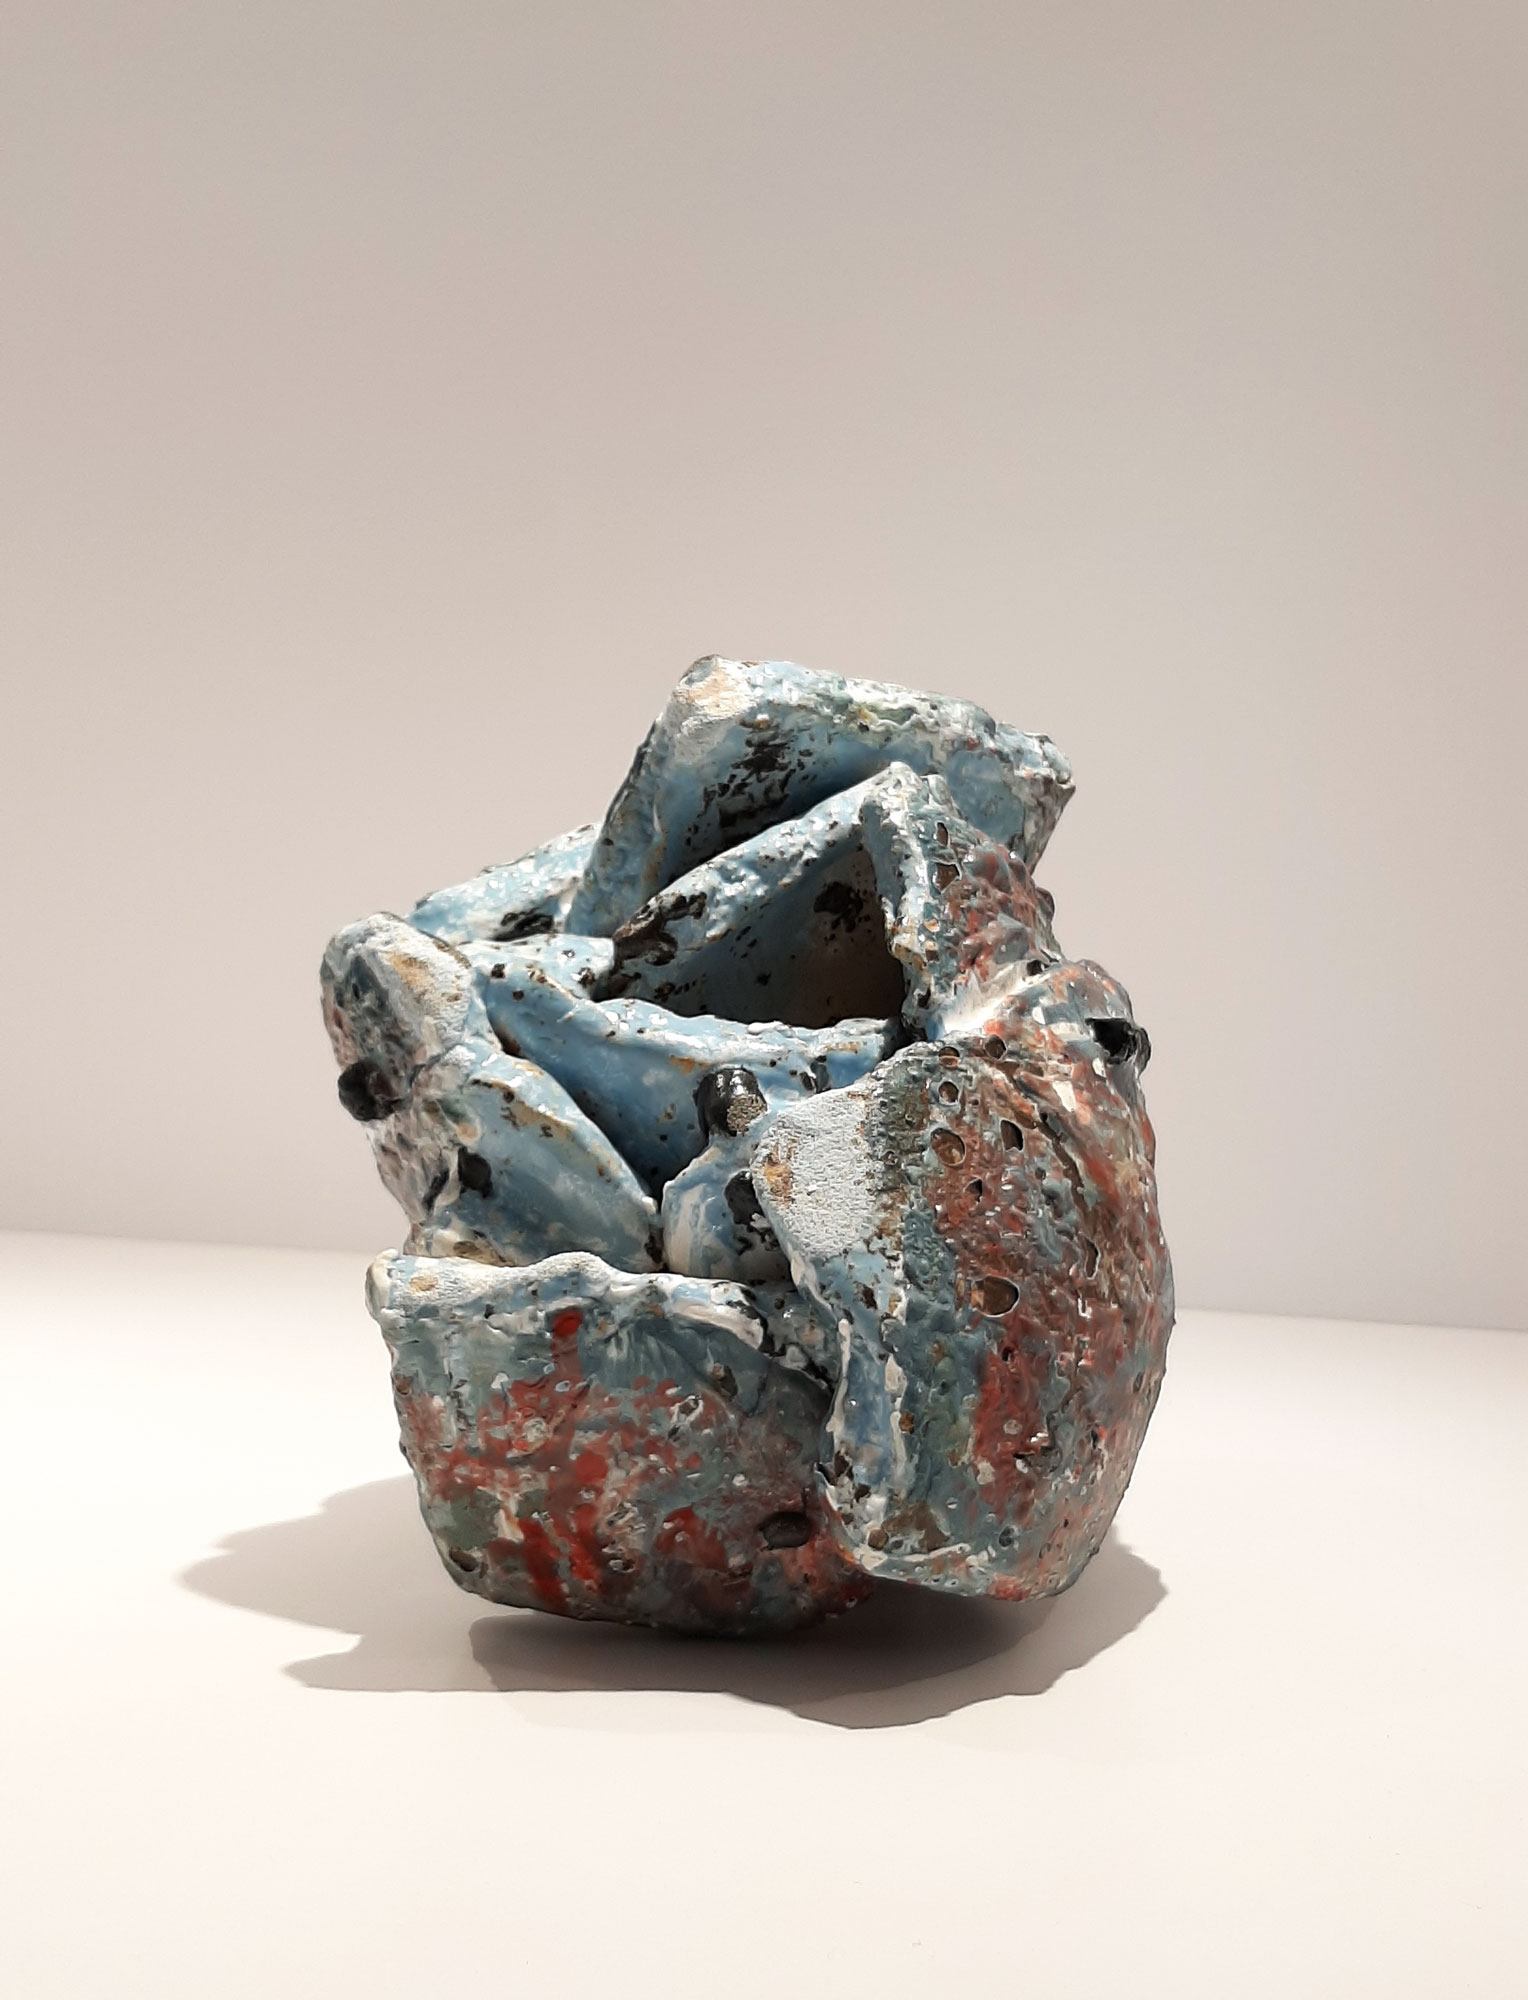 Sonja Delforce - Sculpture céramique - Grès, engobes et émail. Cuisson four électrique 1200° - 22 x 18 x 20 cm - 2019